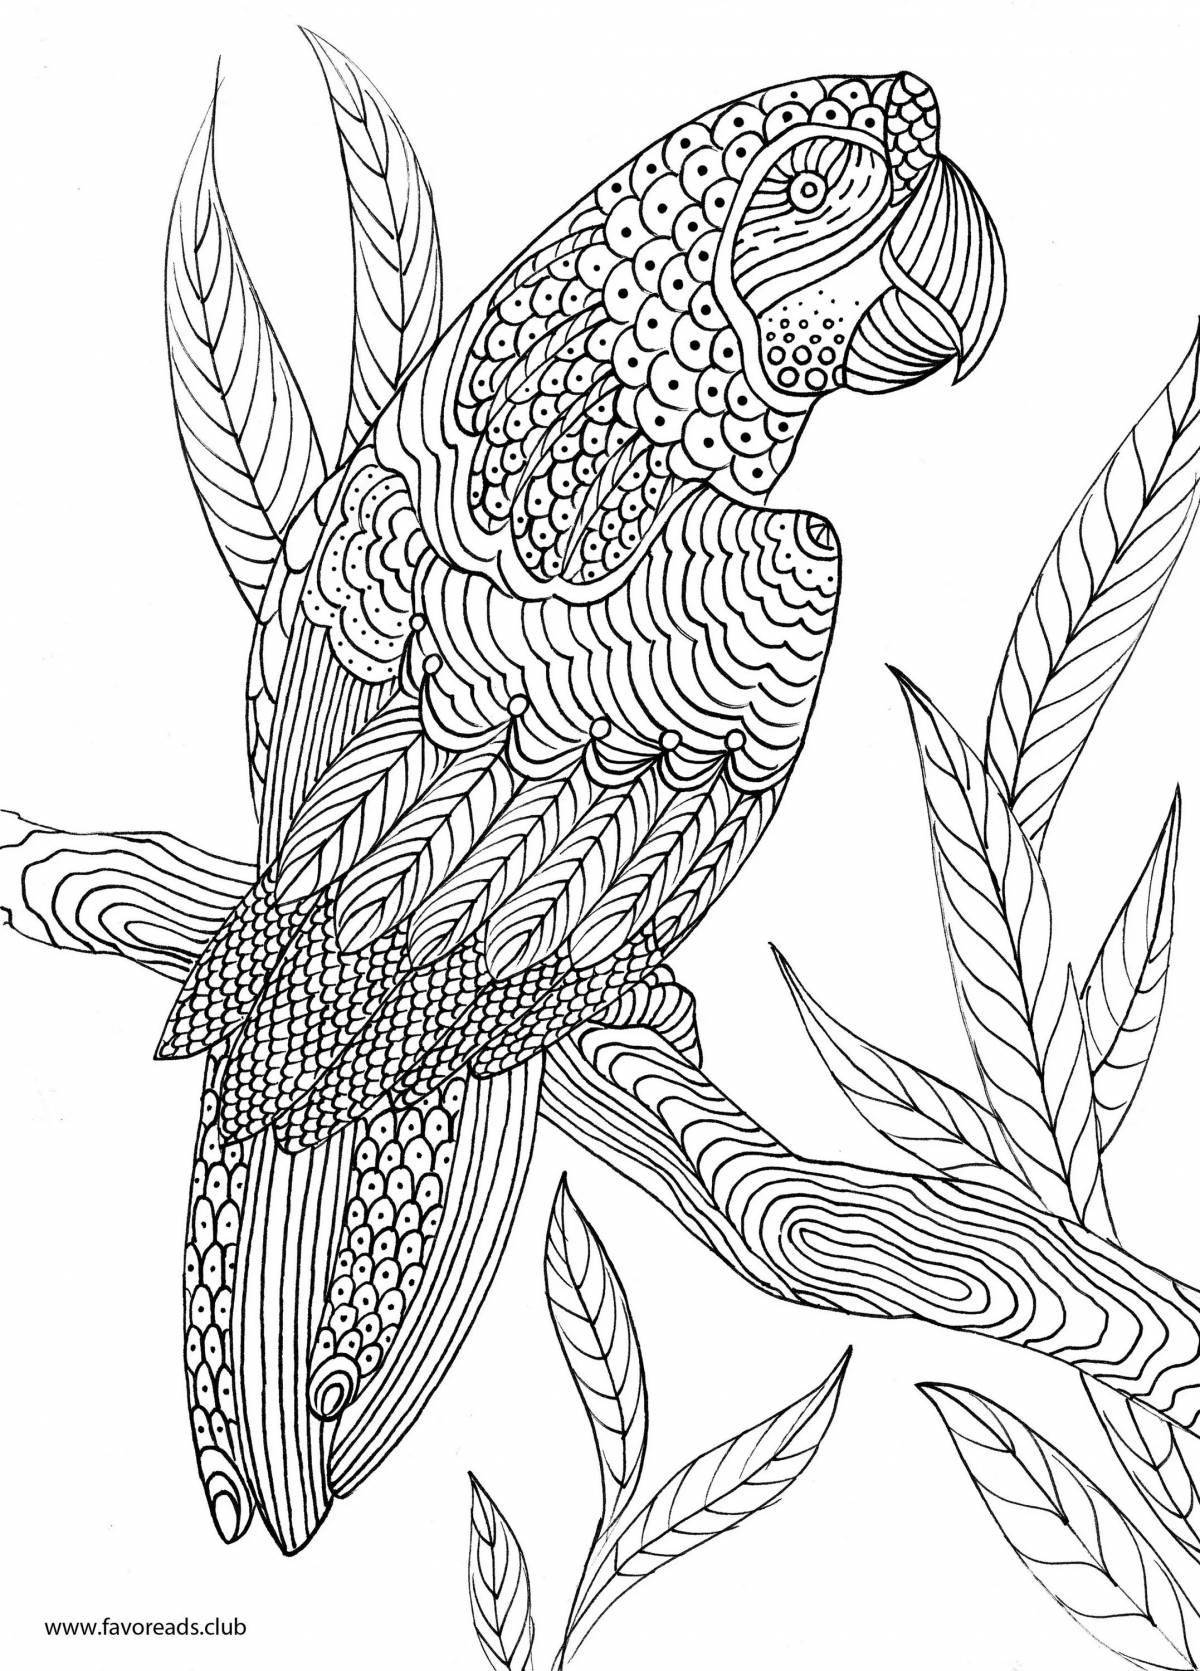 Великолепно раскрашенная раскраска попугай